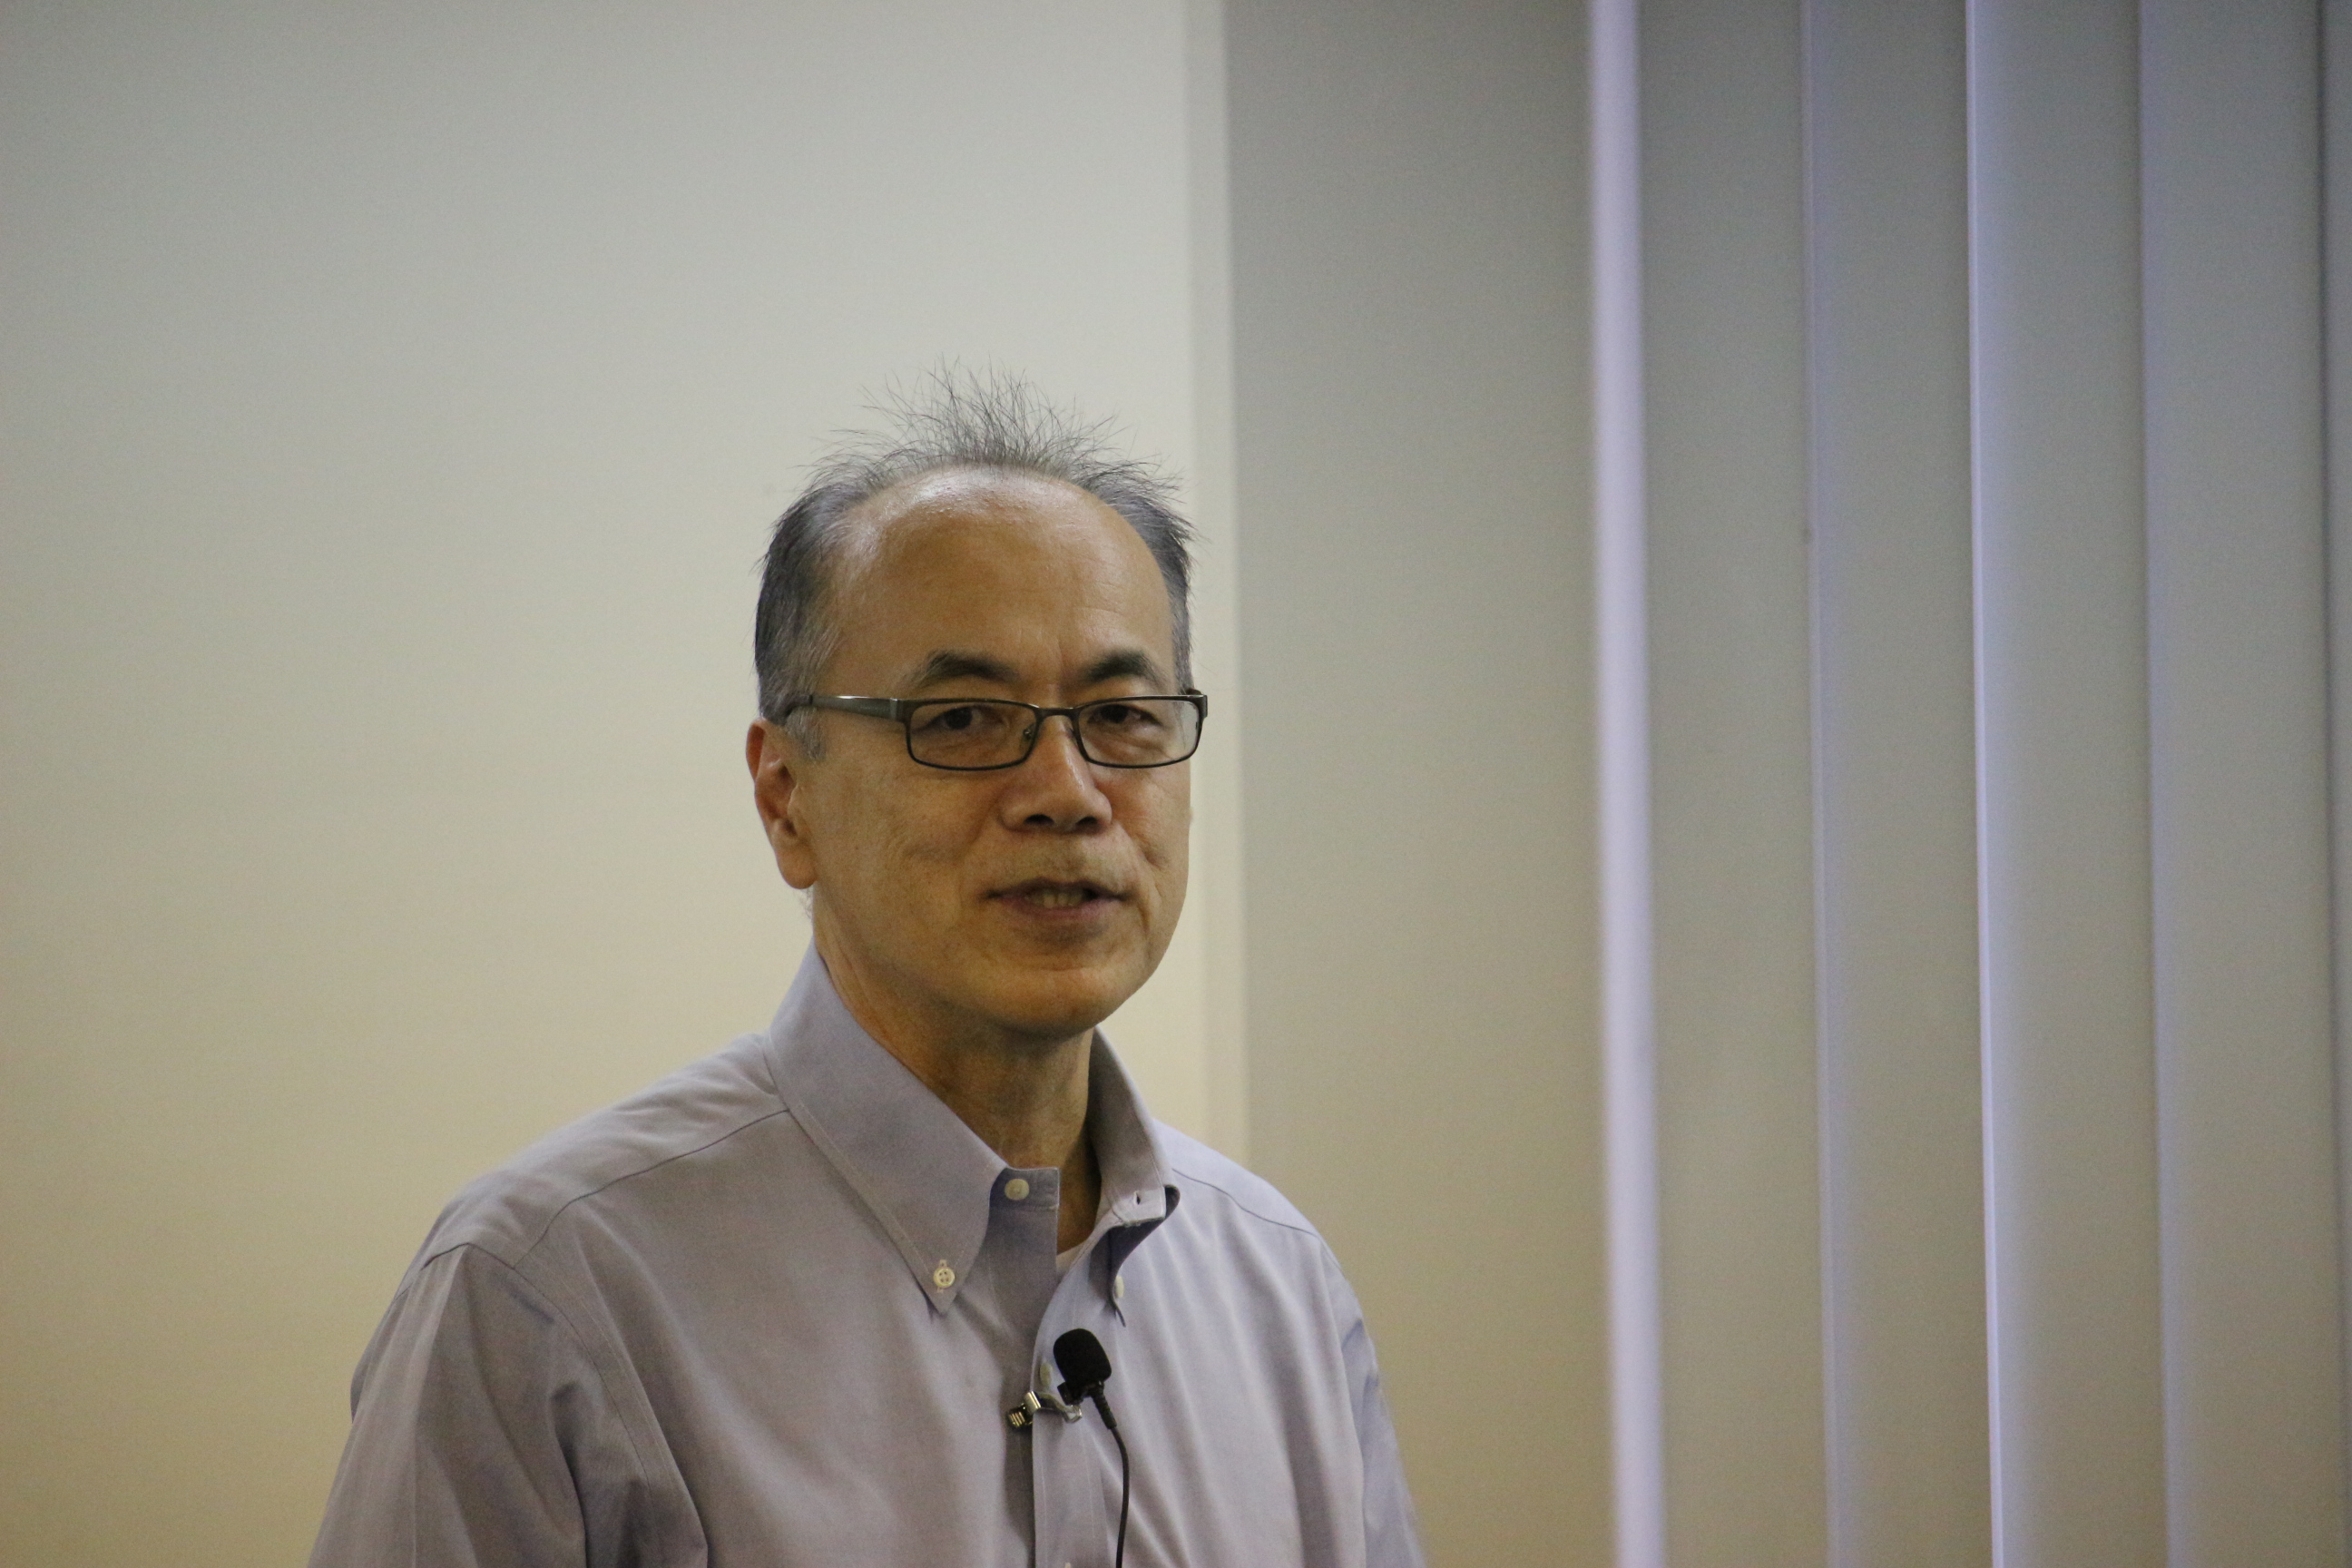 理化学研究所 リサーチコンプレックス戦略室 竹谷誠 氏 が講演